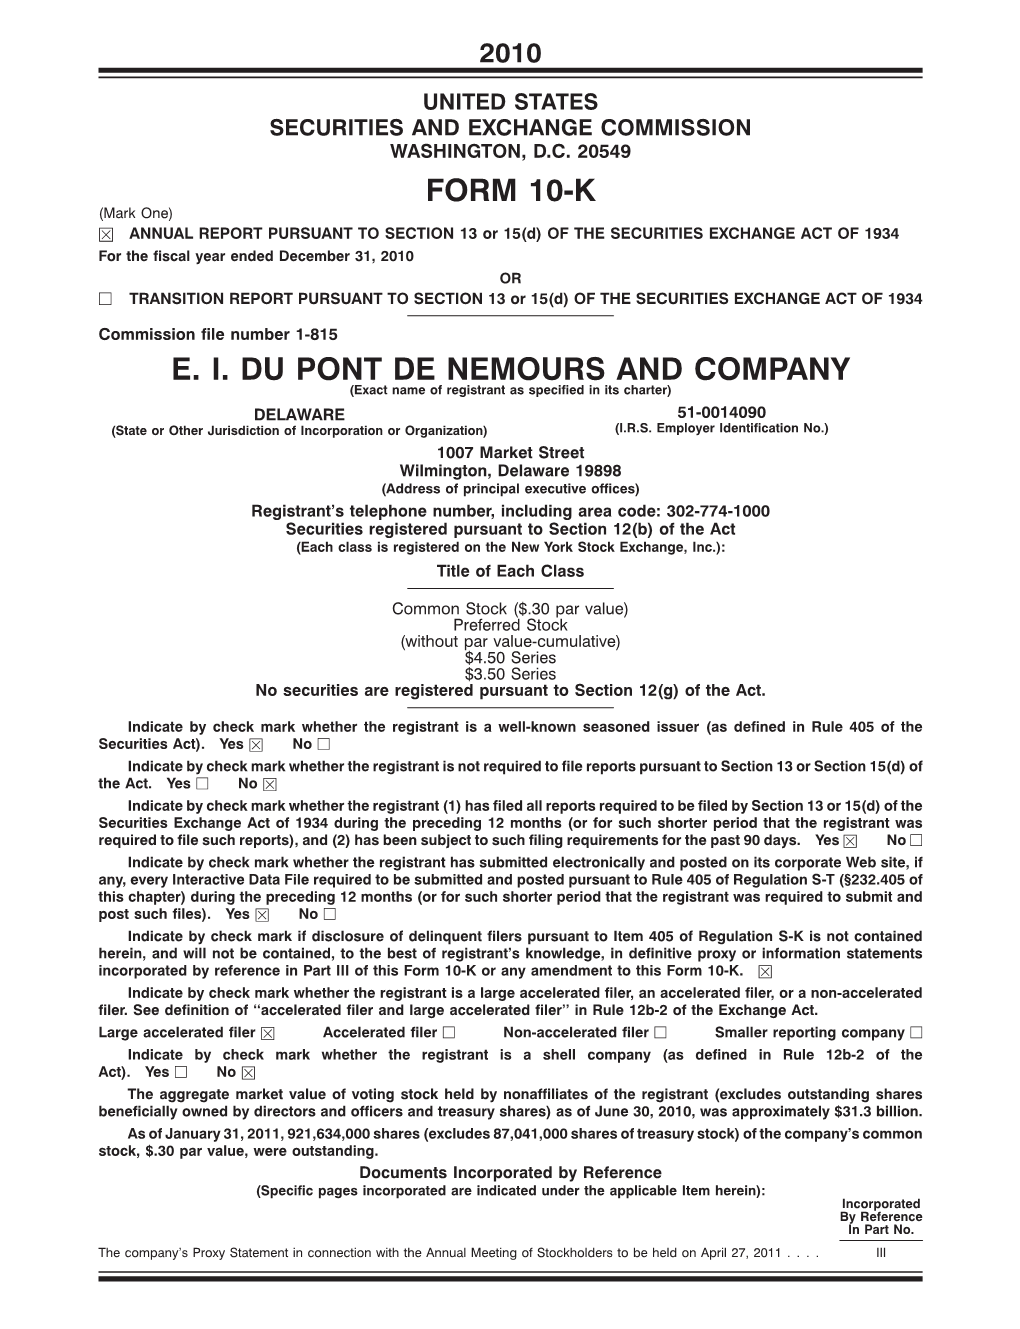 E. I. Dupont De Nemours and Company Form 10-K for 2010